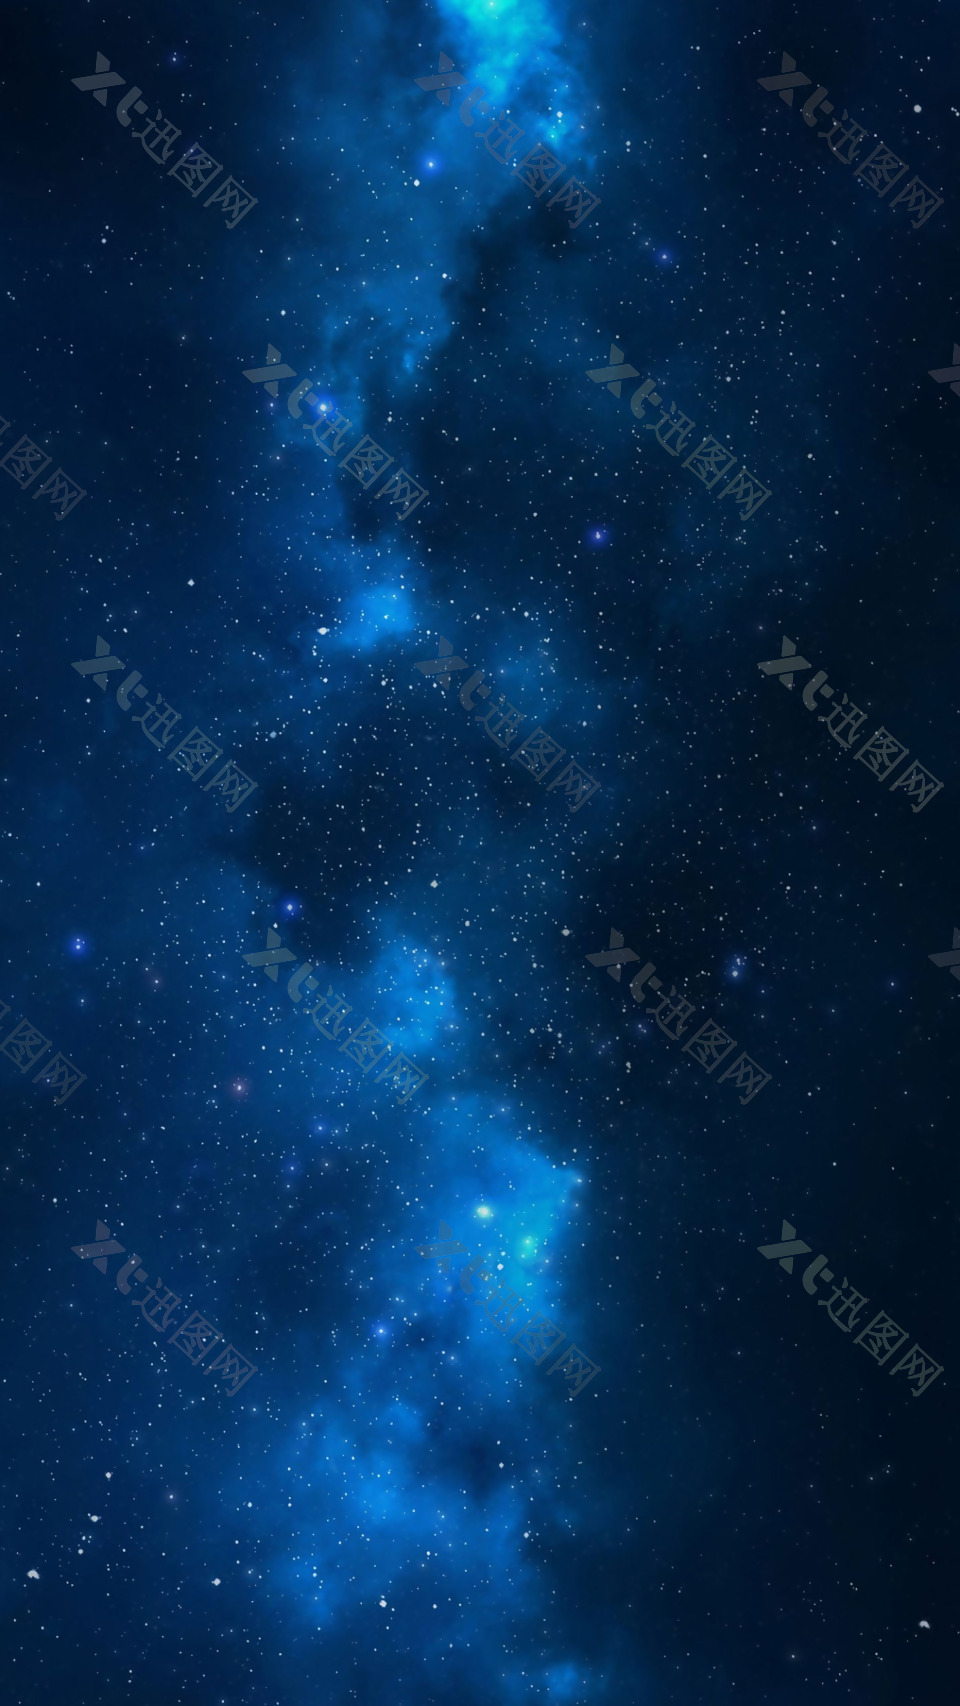 唯美蓝色星空H5背景素材